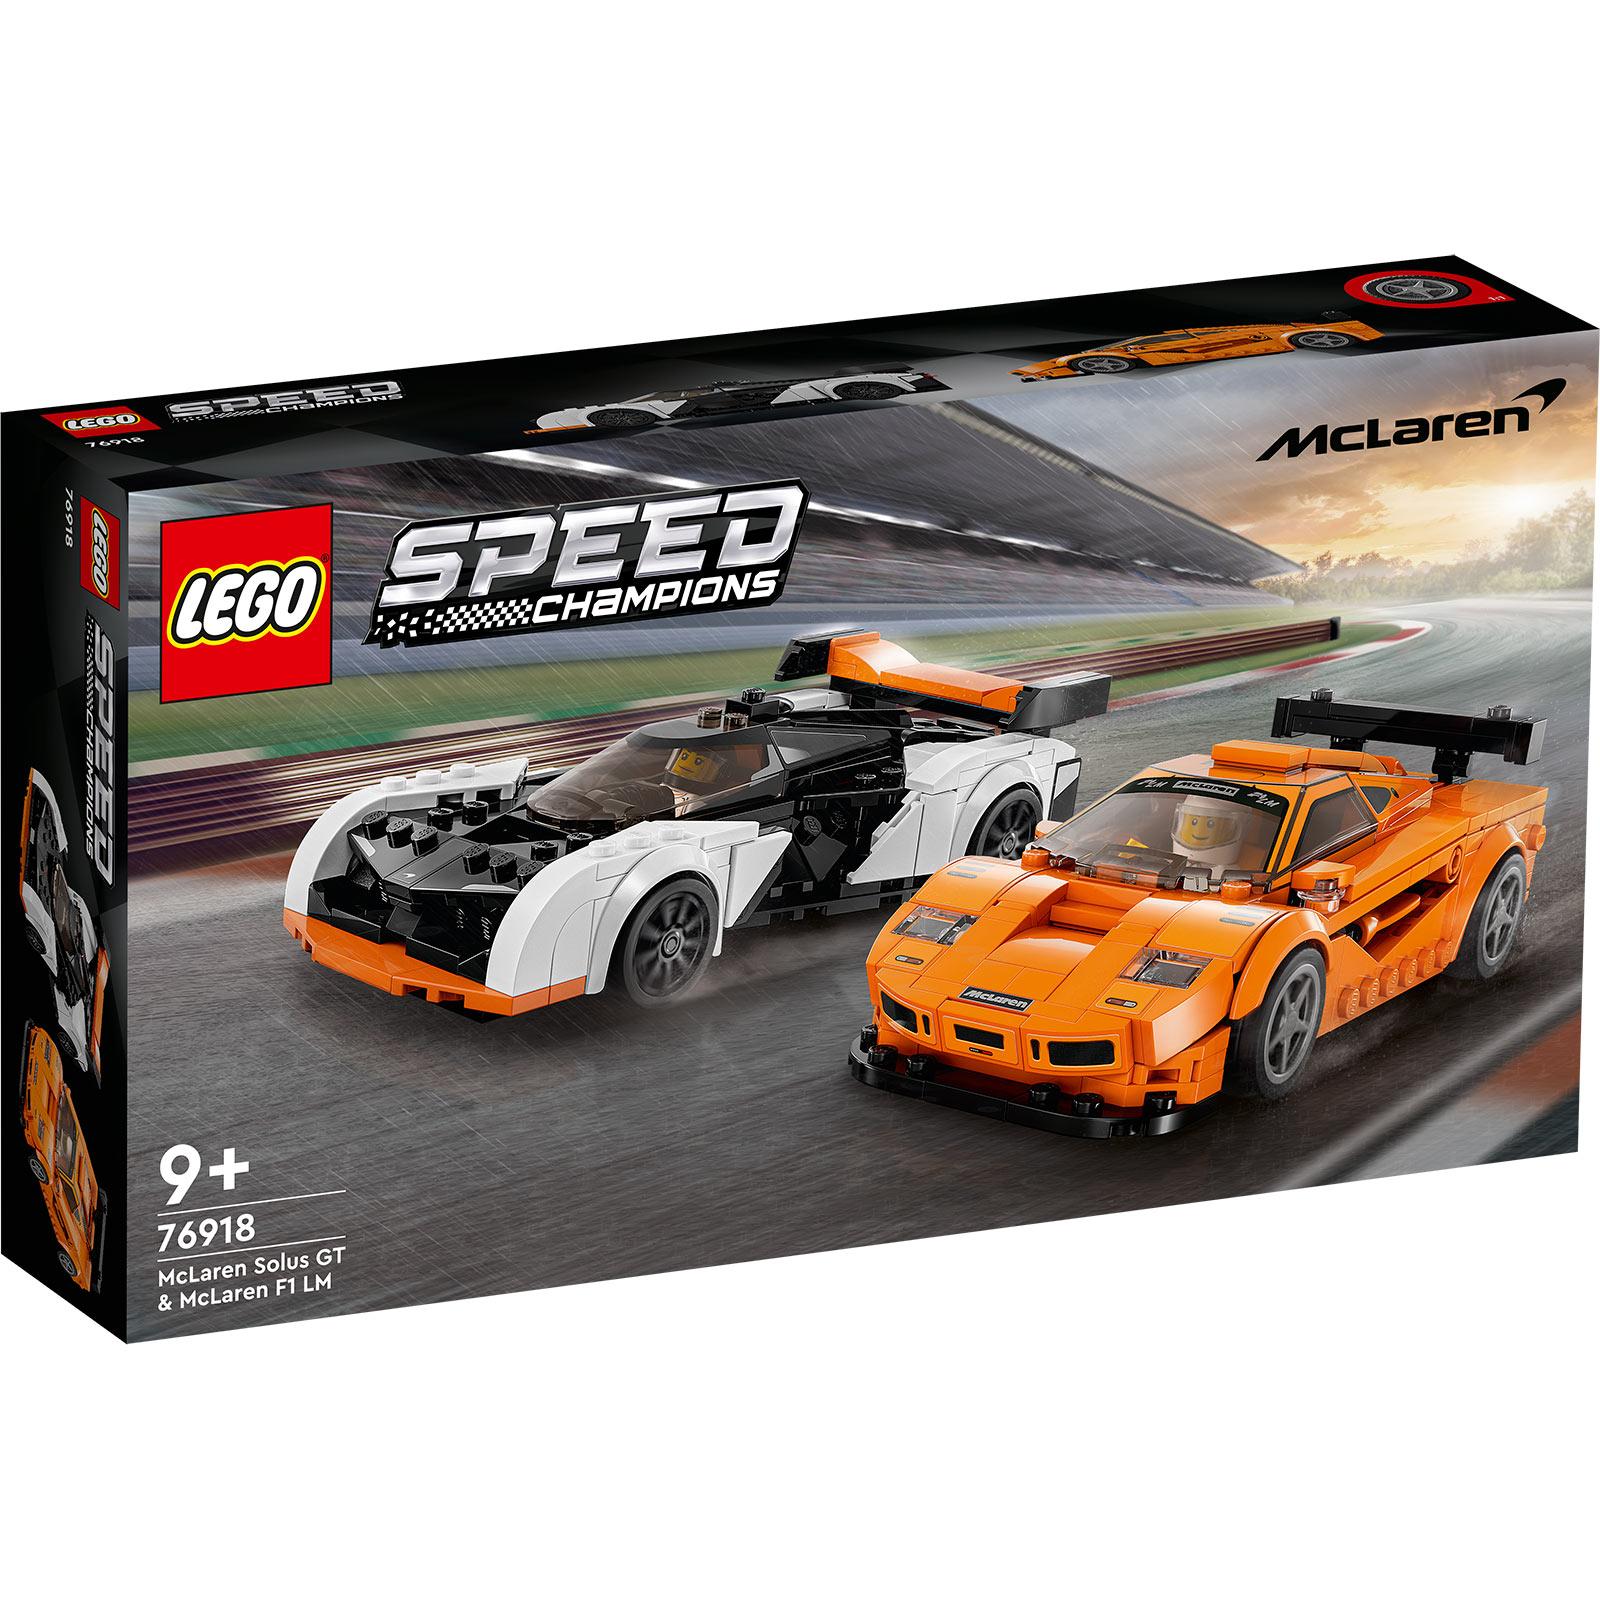 Selected image for LEGO Kocke McLaren Solus GT i McLaren F1 LM 76918